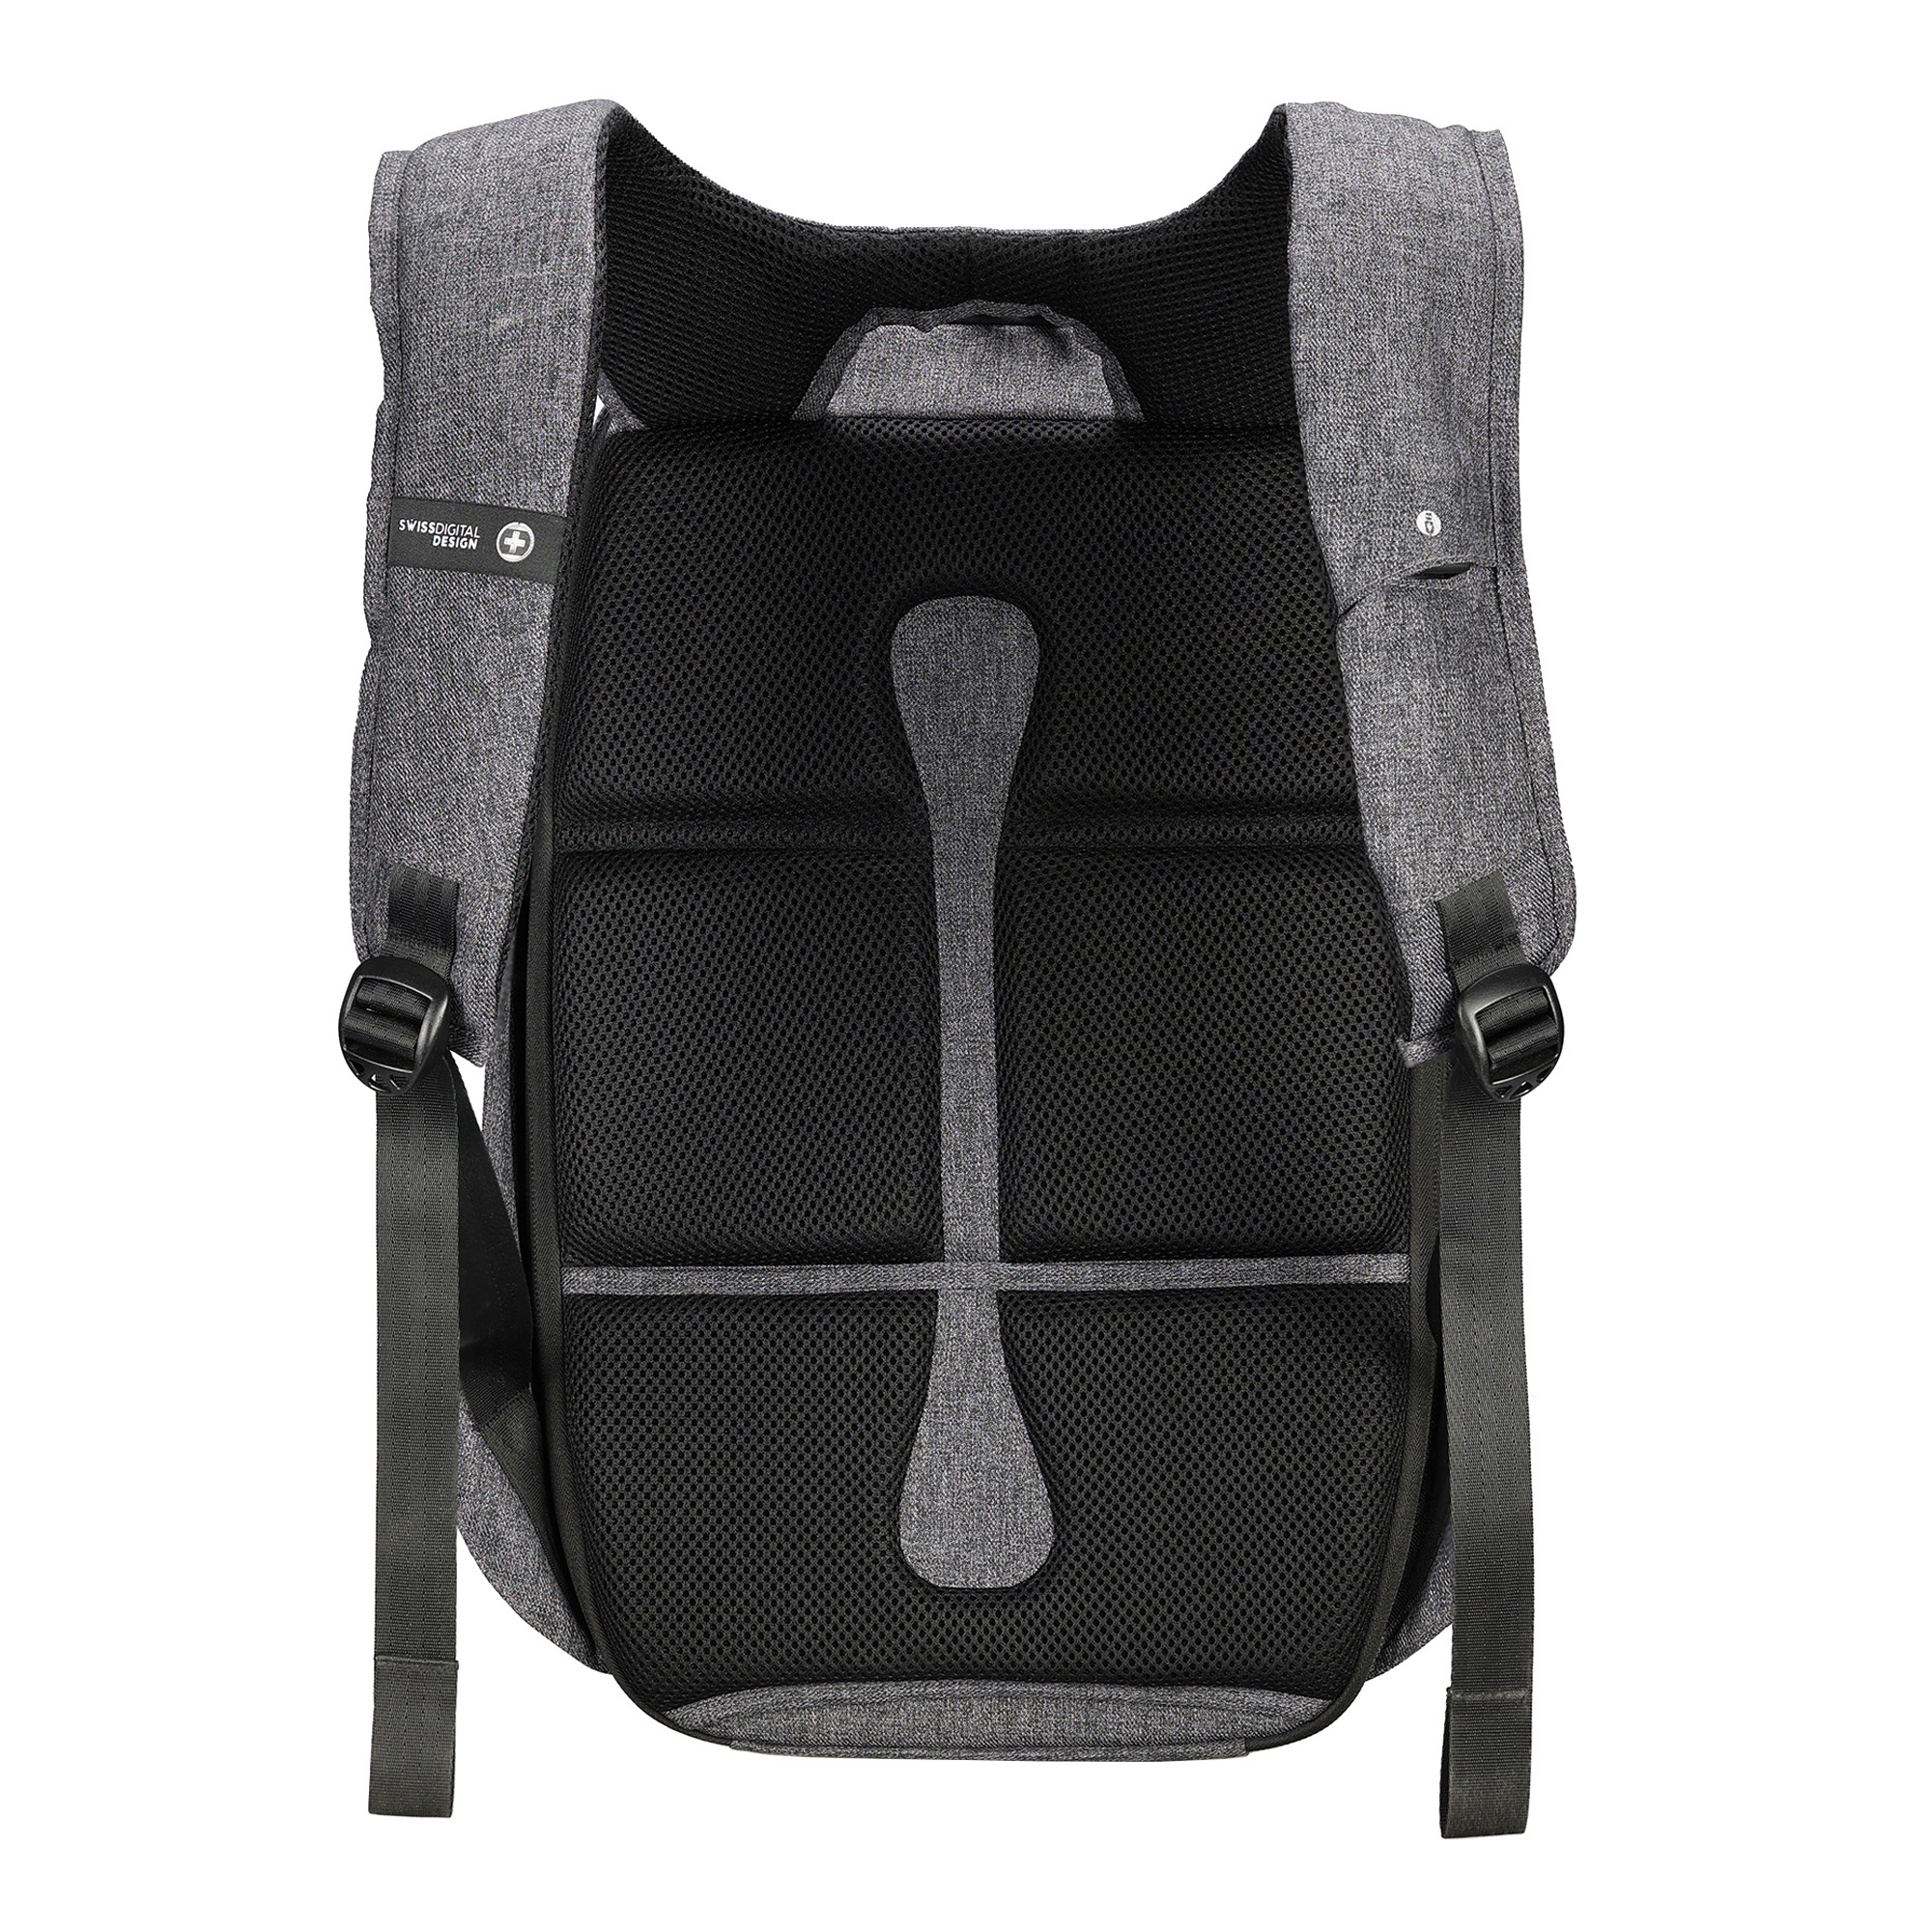 Backpack COSMO SDE401F-02 Grau, SWISSDIGITAL 3.0